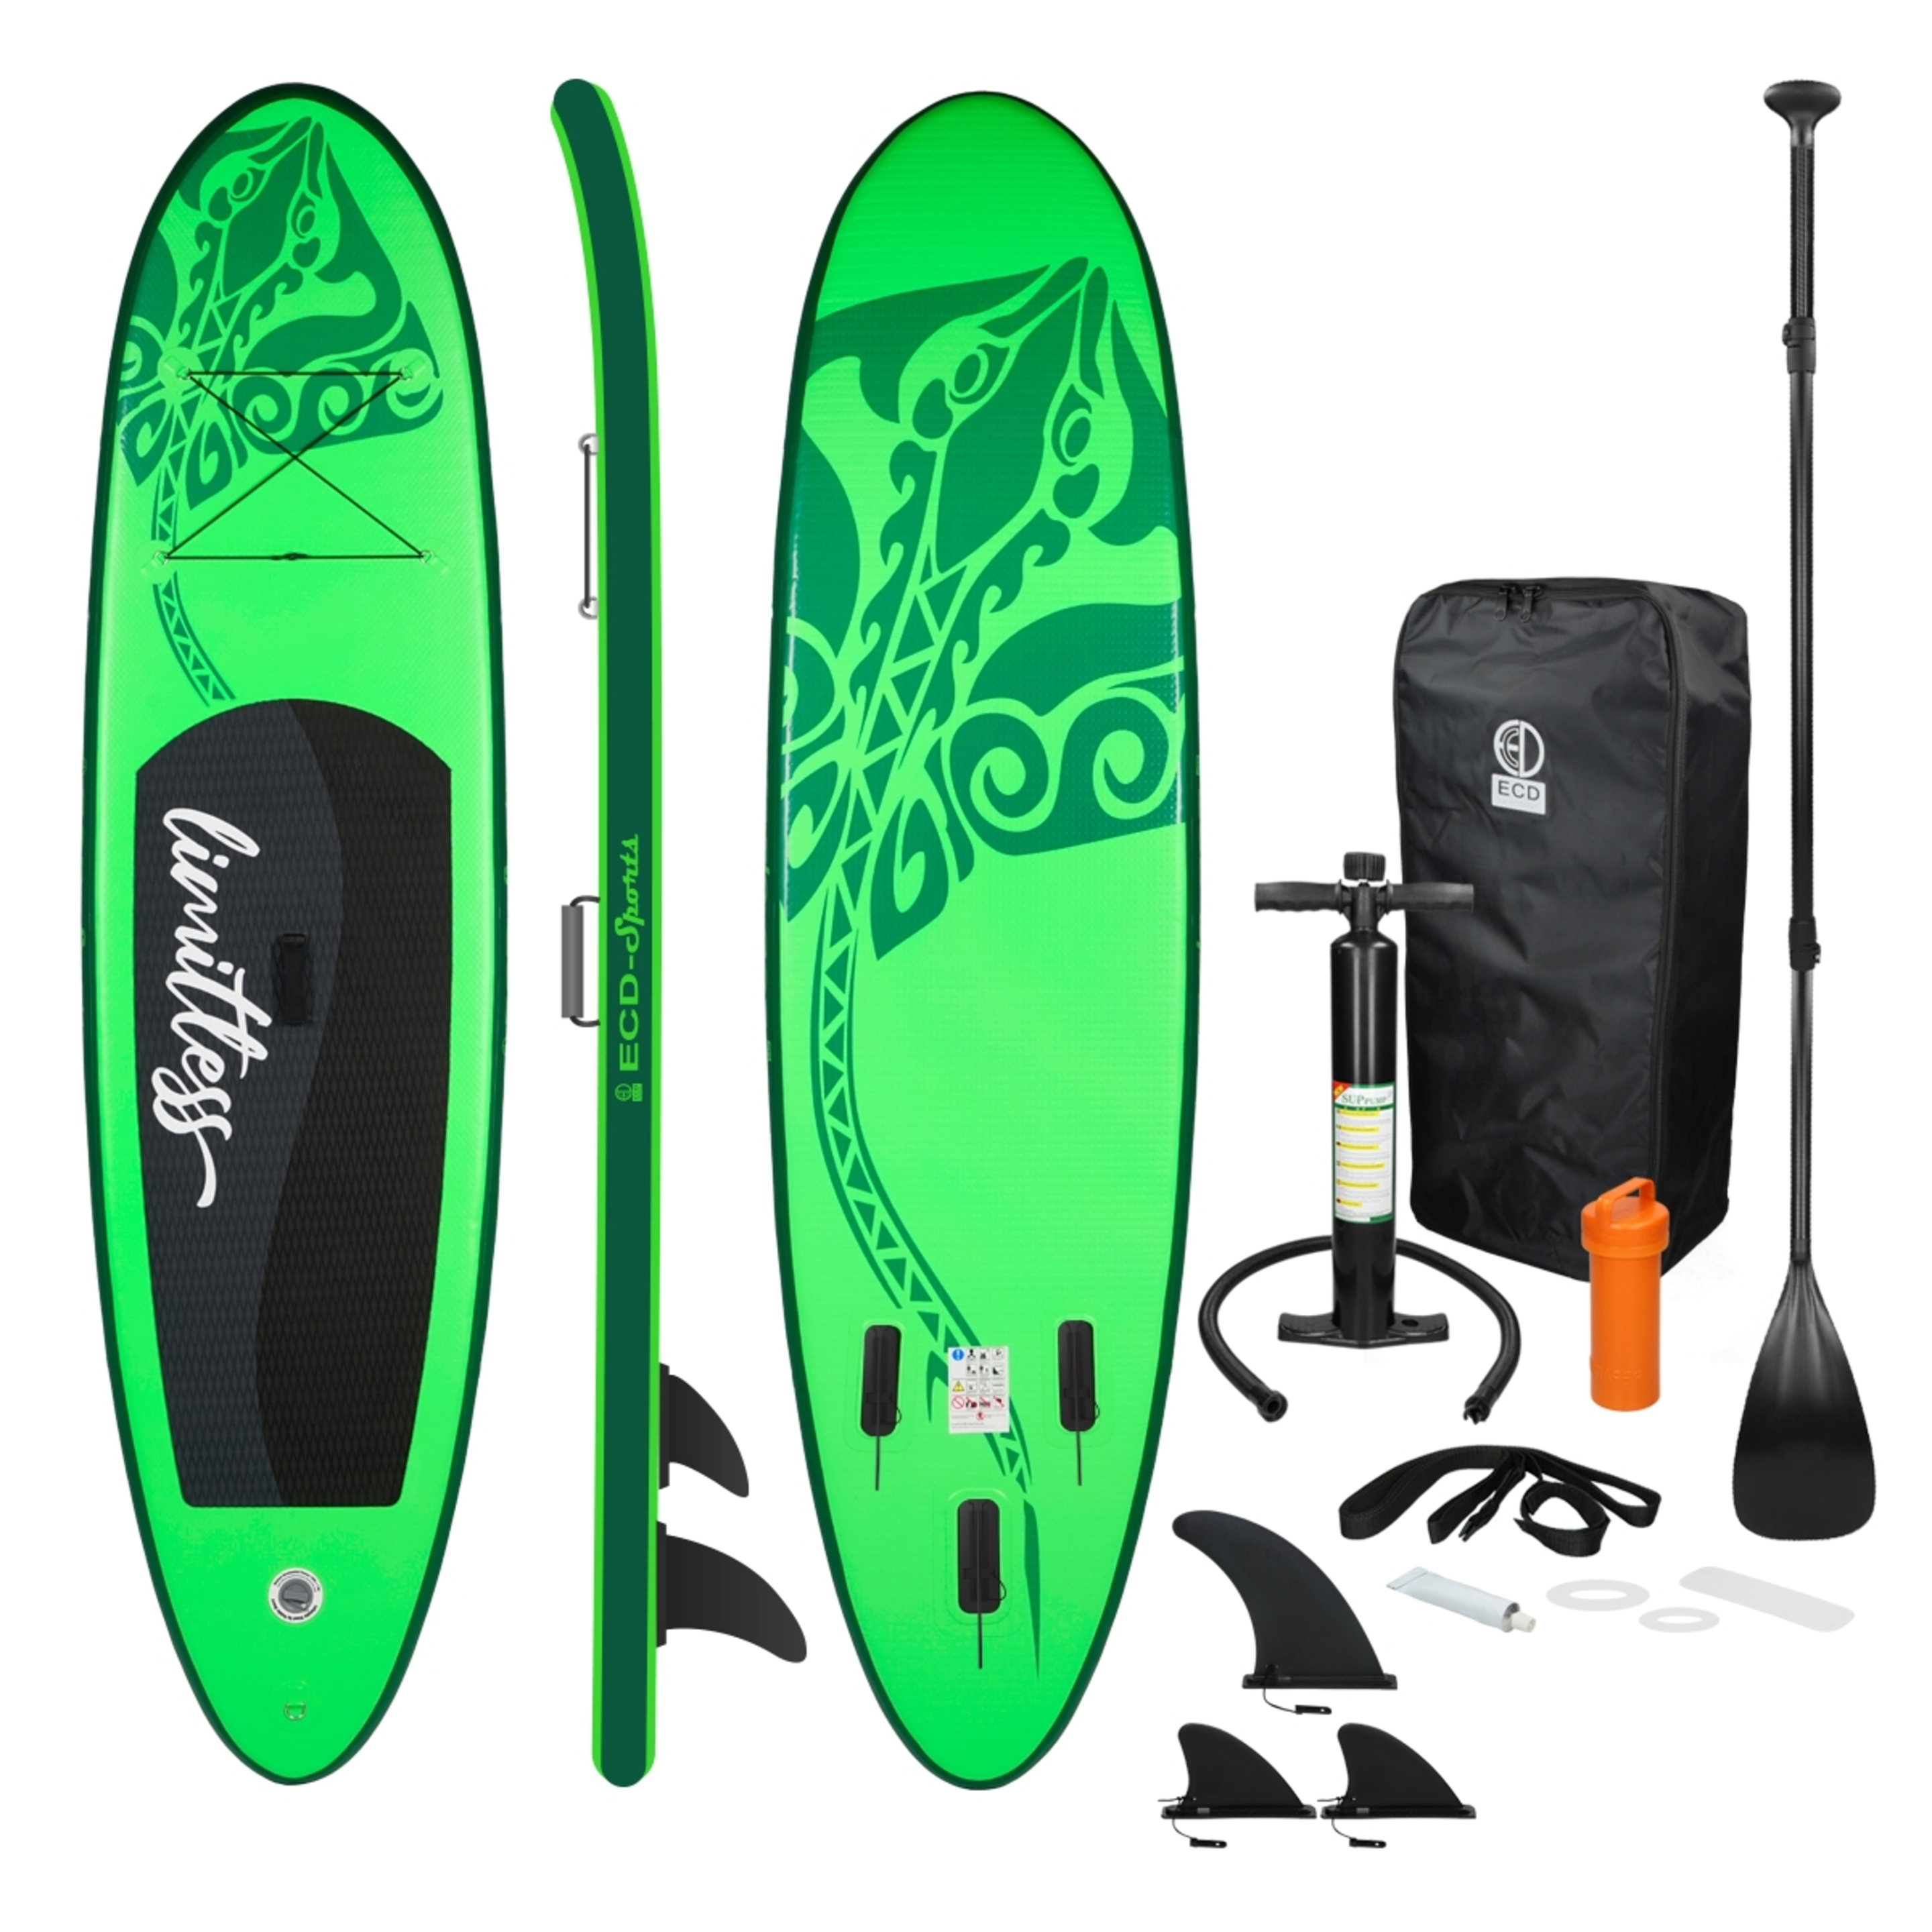 Ecd-germany Tabla Hinchable De Paddle Surf Sup Con Accesorios - verde-negro - 